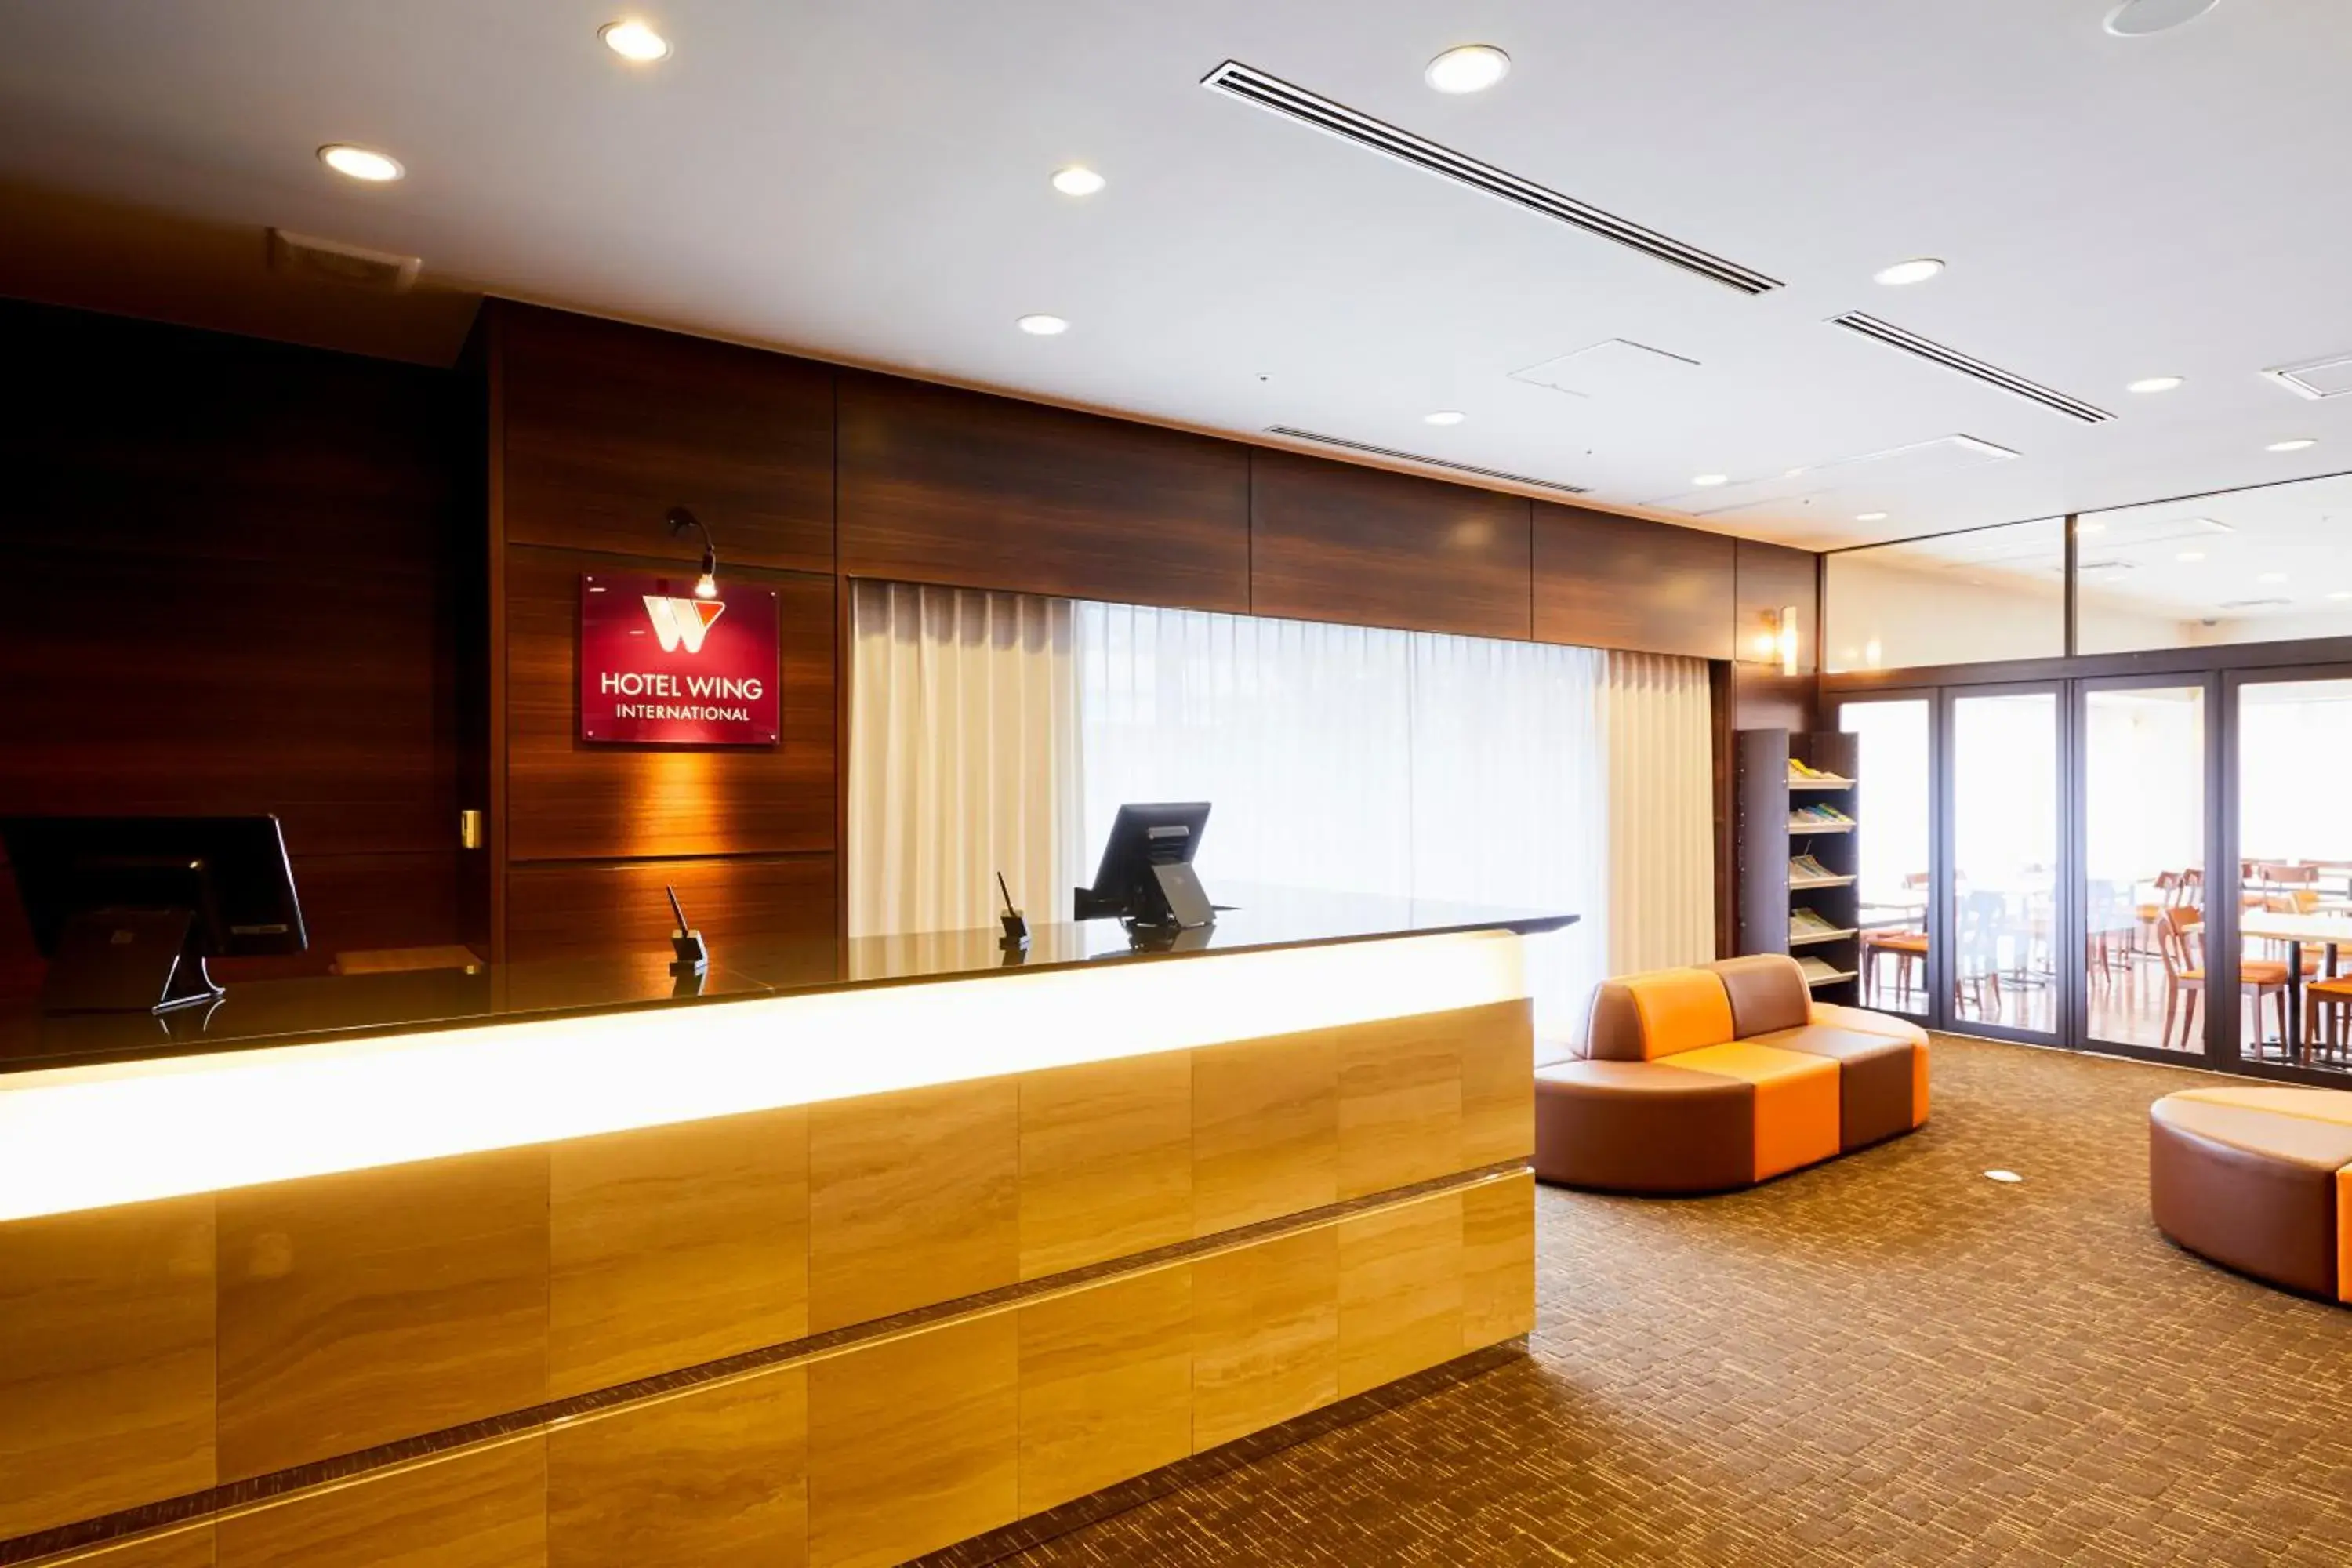 Lobby or reception, Lobby/Reception in Hotel Wing International Kobe Shinnagata Ekimae